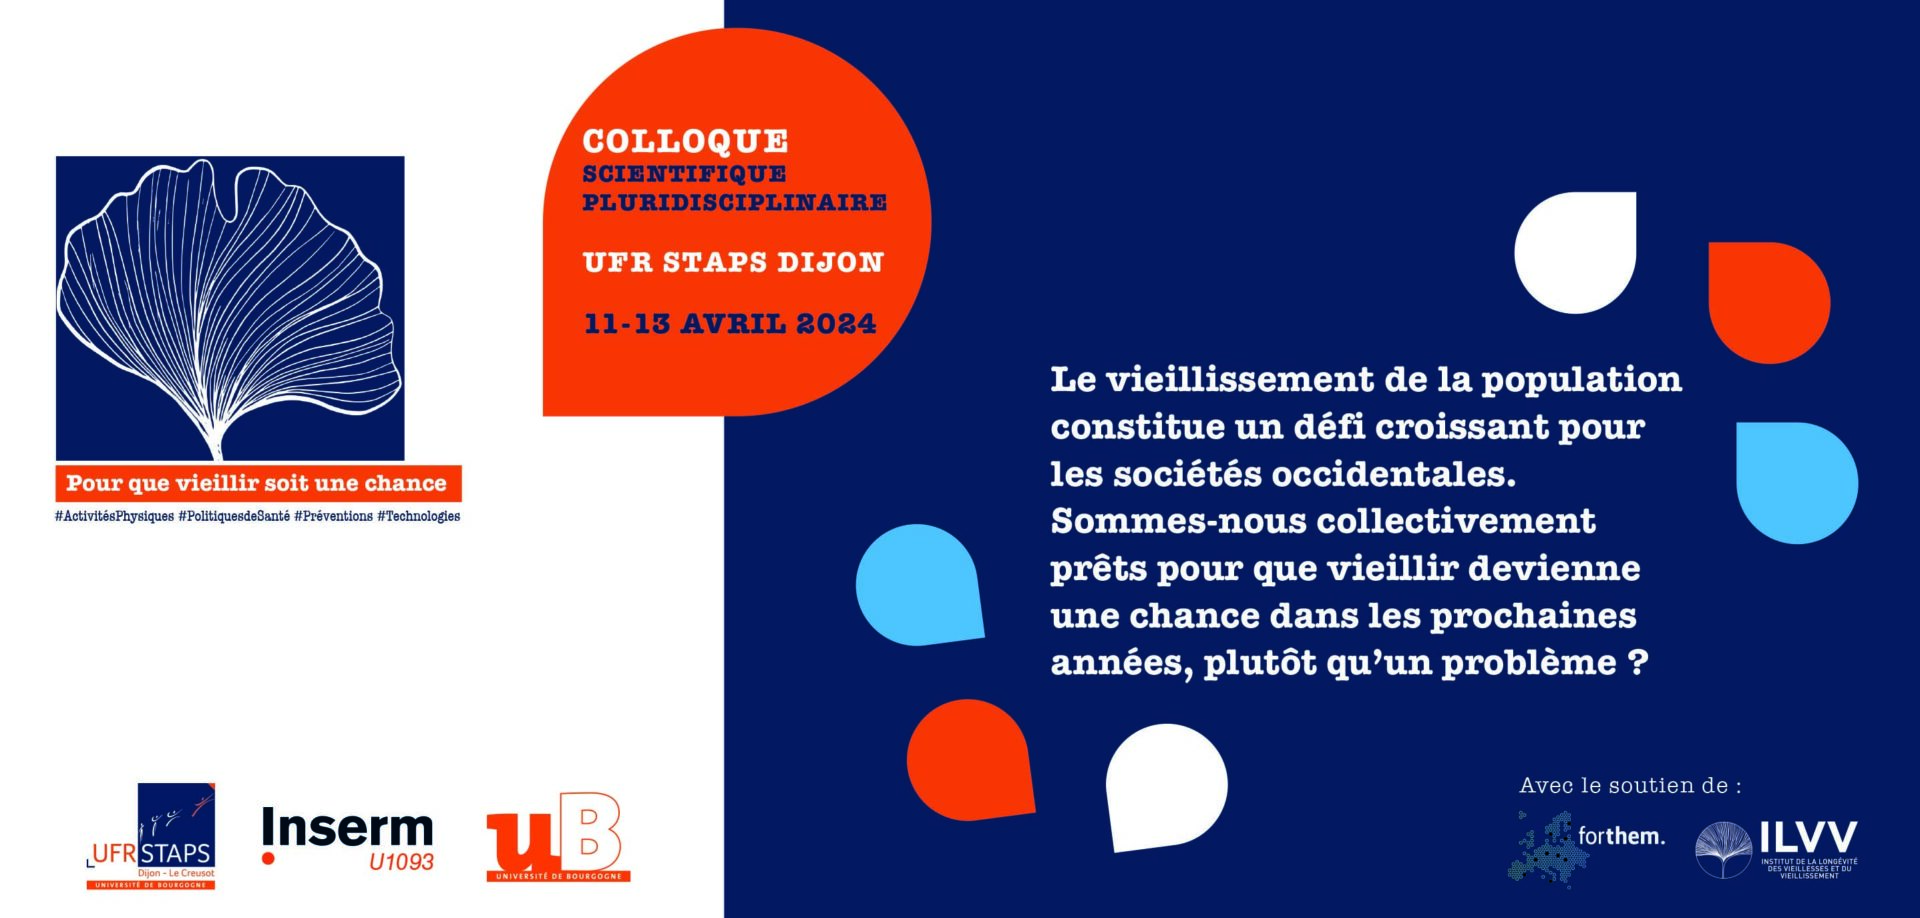 Colloque “Pour que vieillir soit une chance” April 11-13, 2024 UFR STAPS Dijon